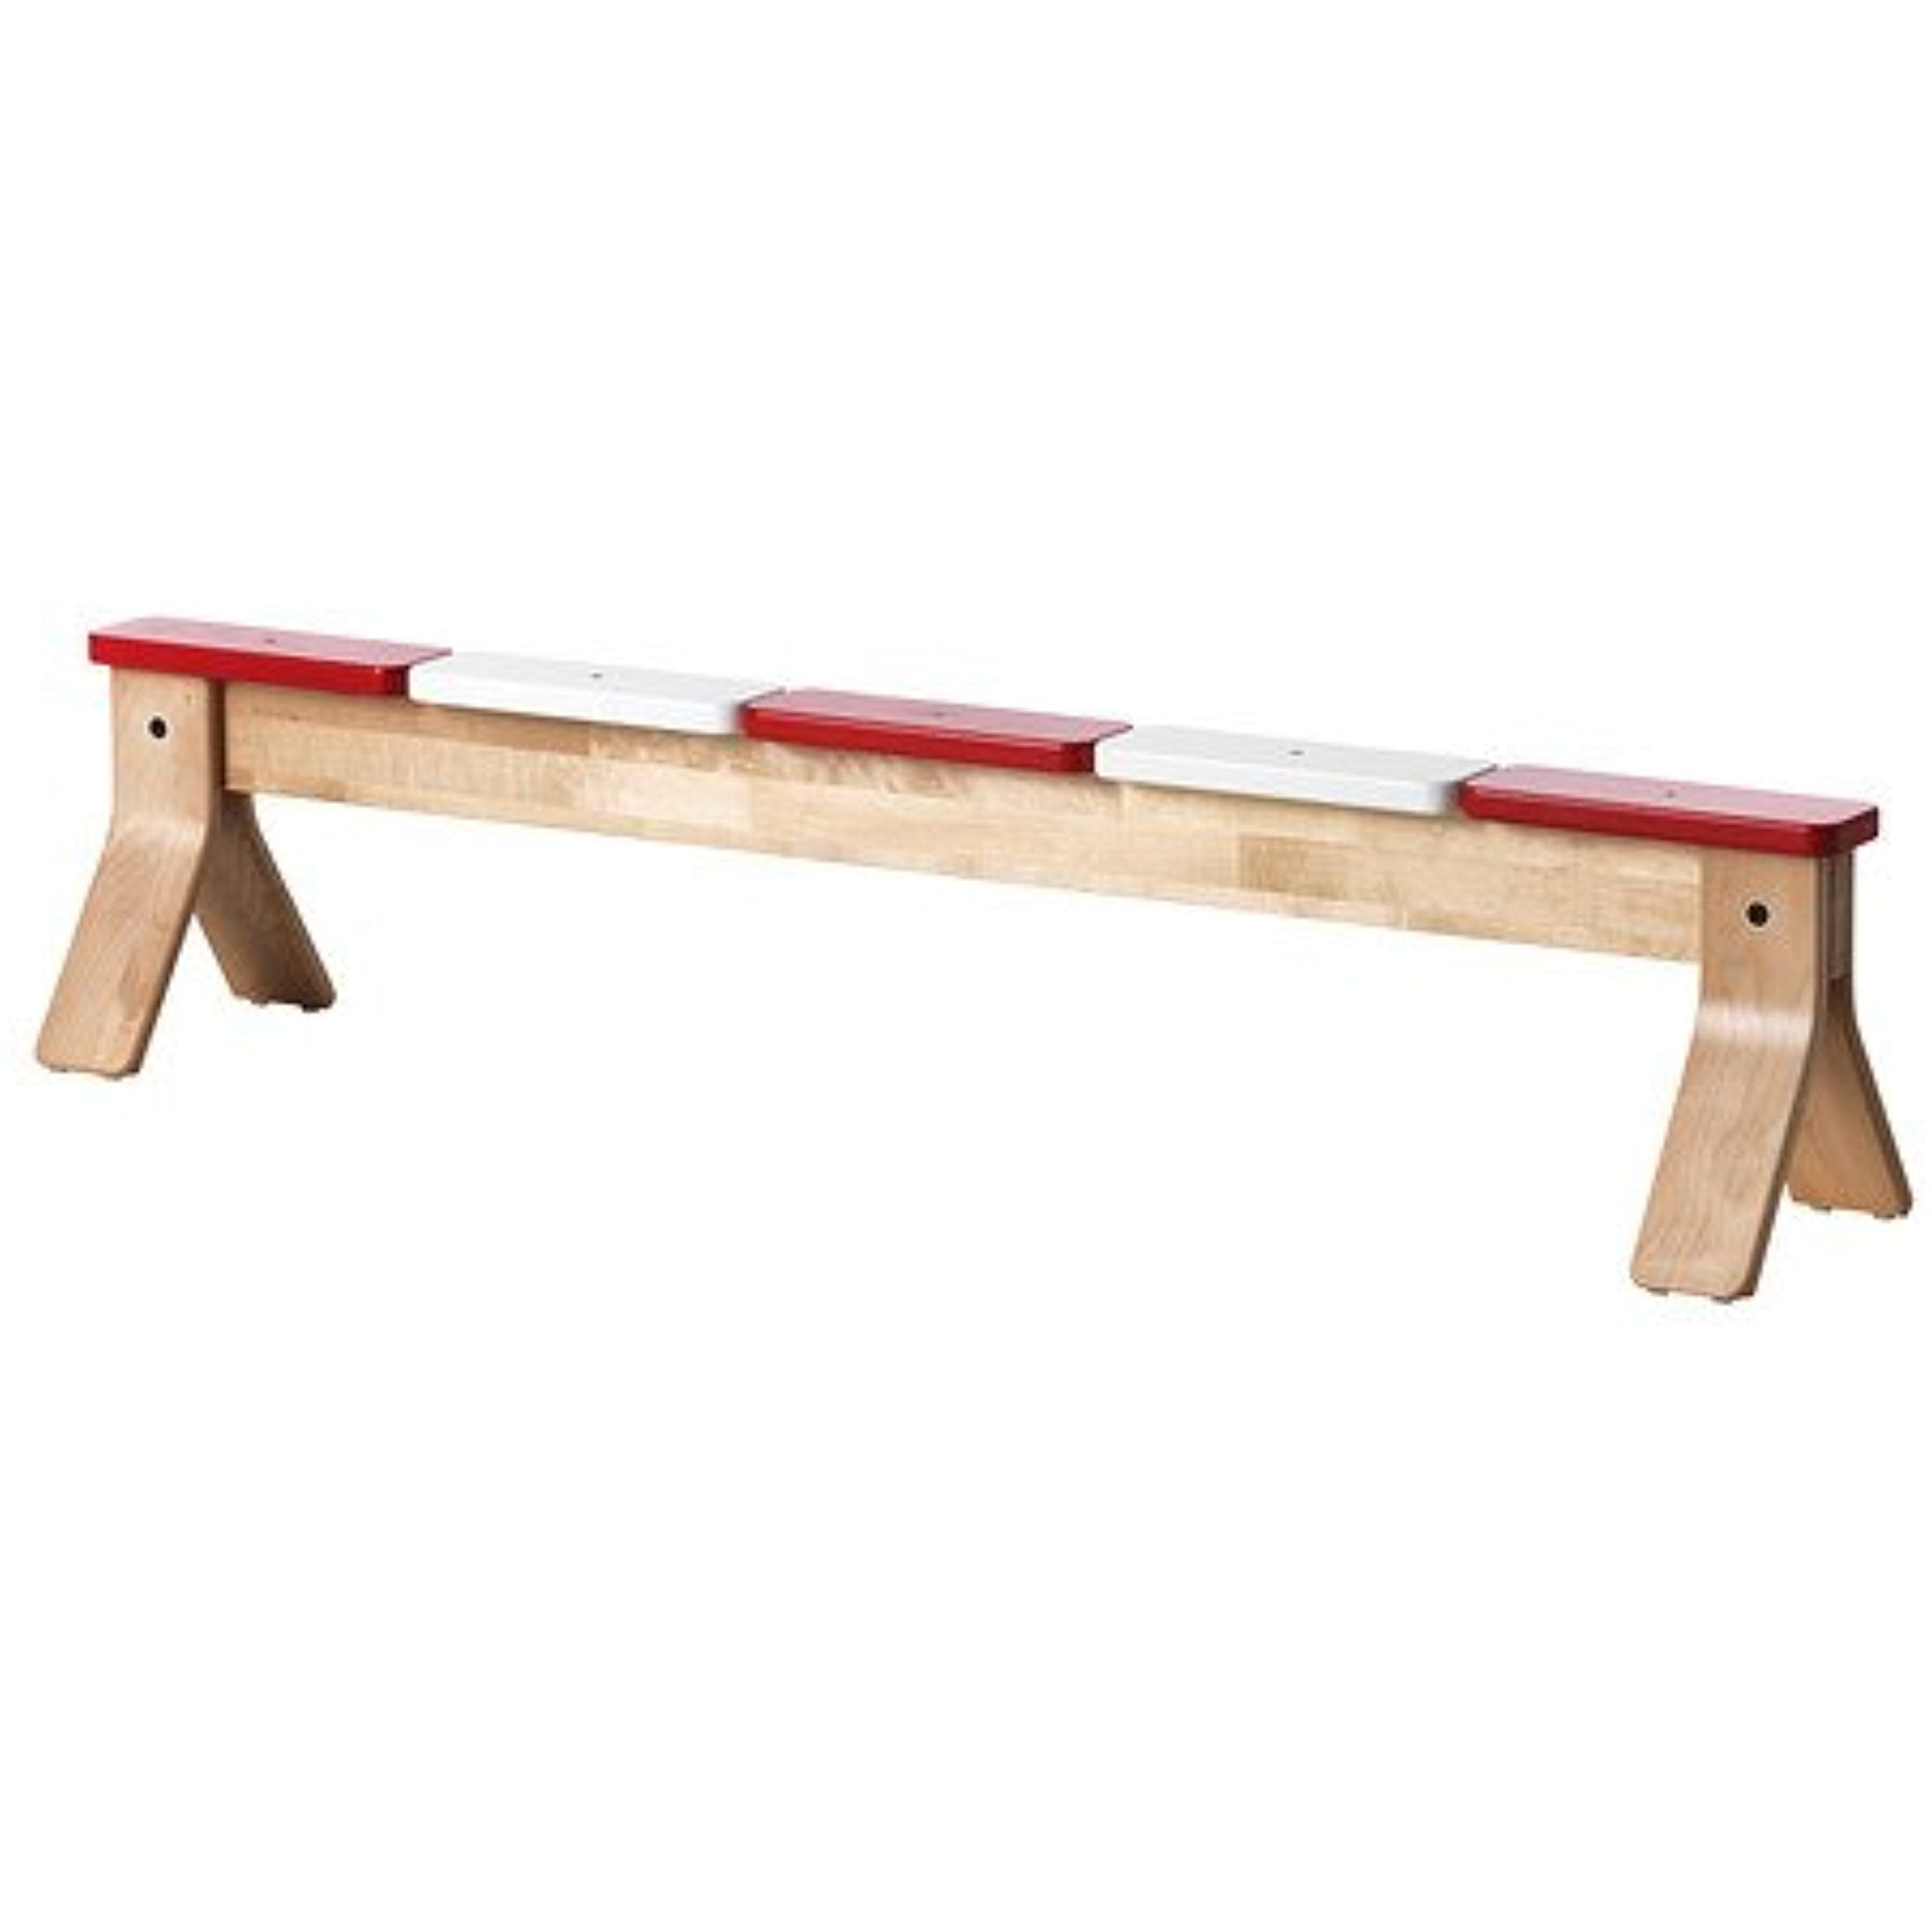 Aanpassen Uittreksel venster Ikea Ps 2014 Balance Bench, 18210.20829.1216 - Walmart.com